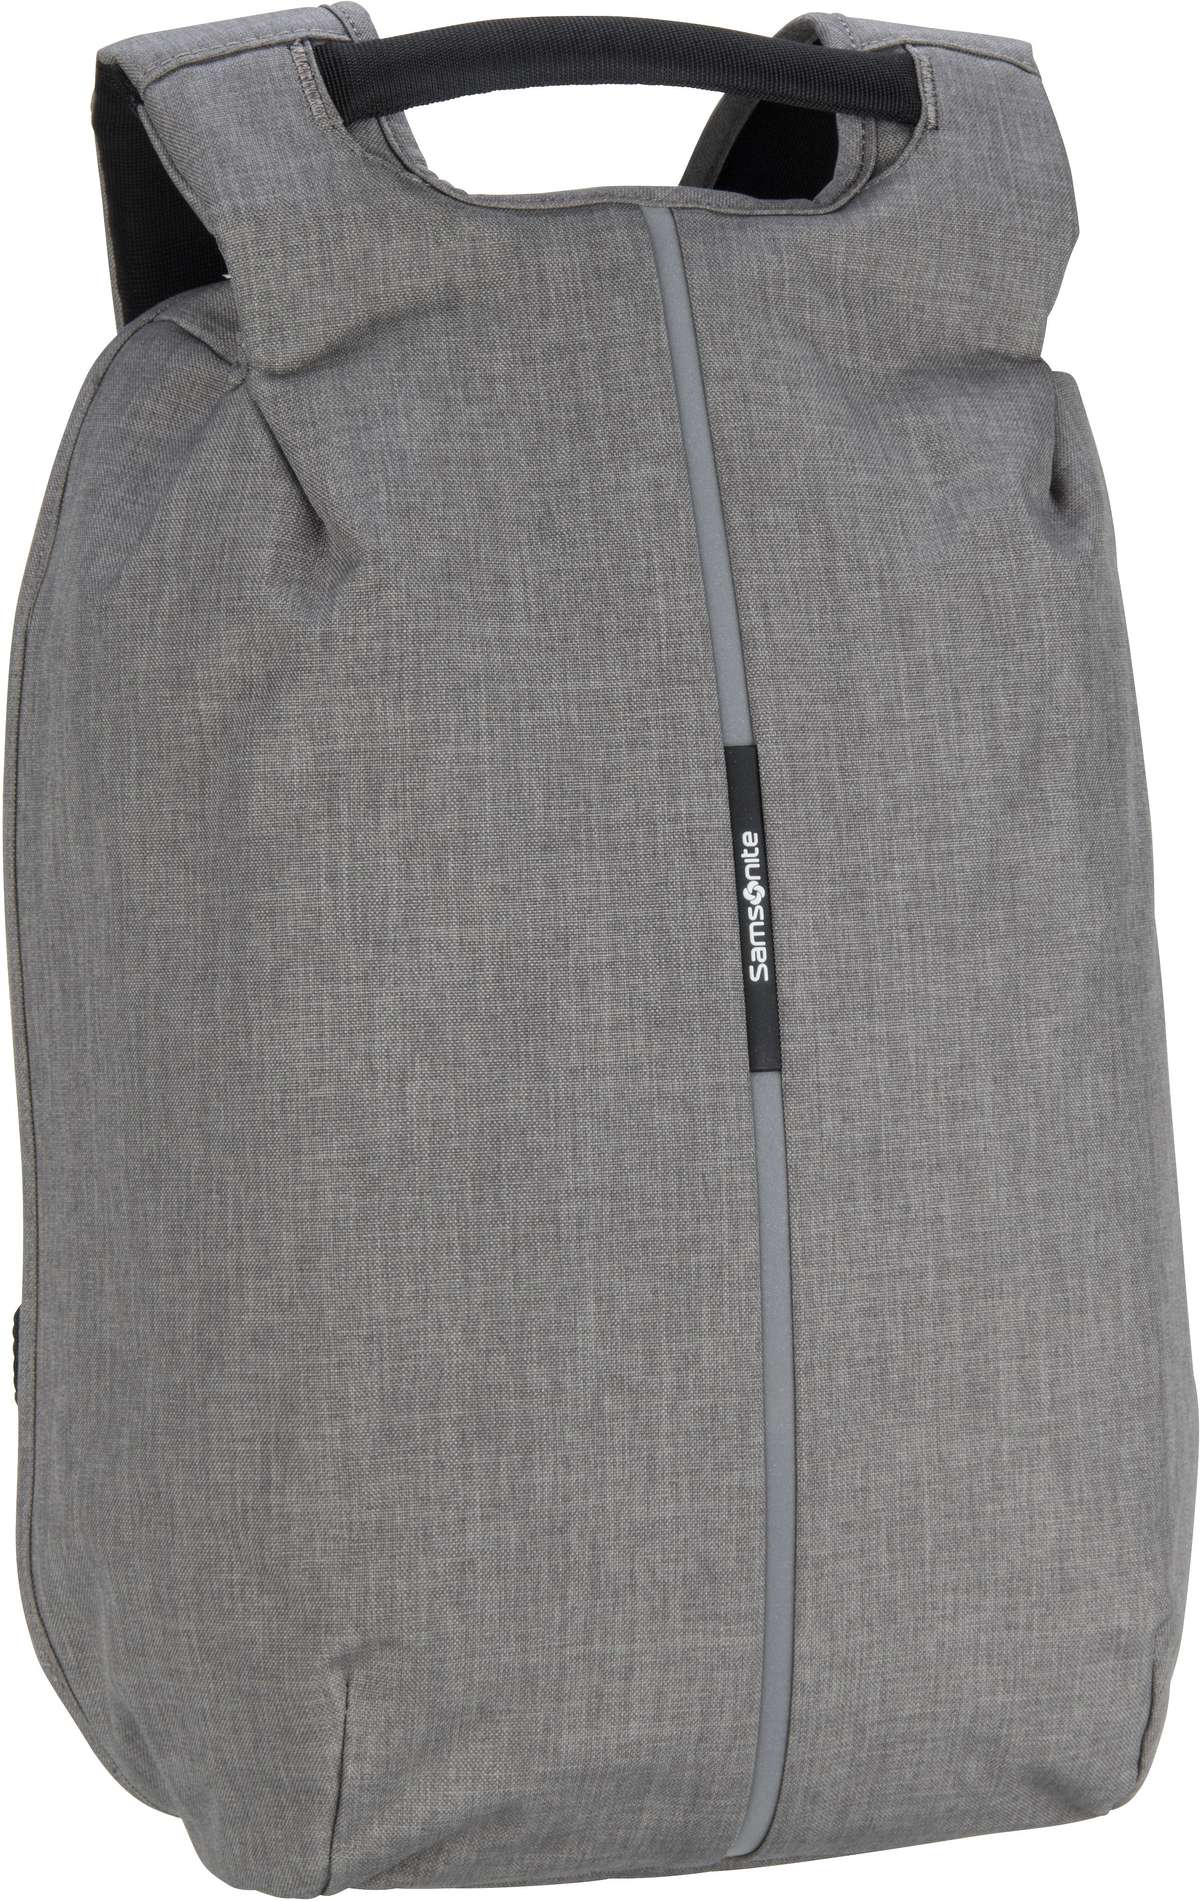 Samsonite Samsonite Securipak Laptop Backpack 15.6'' in Grau (17 Liter), Rucksack / Backpack